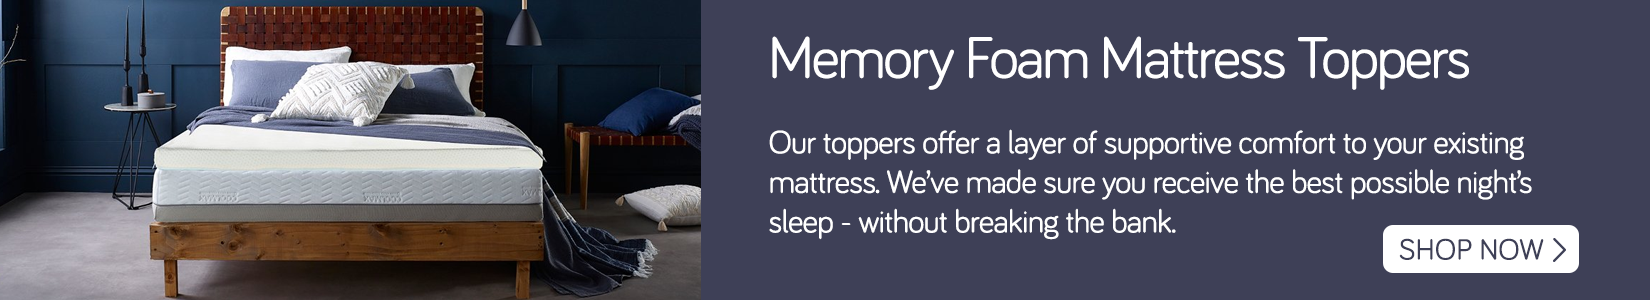 Memory foam mattress topper banner